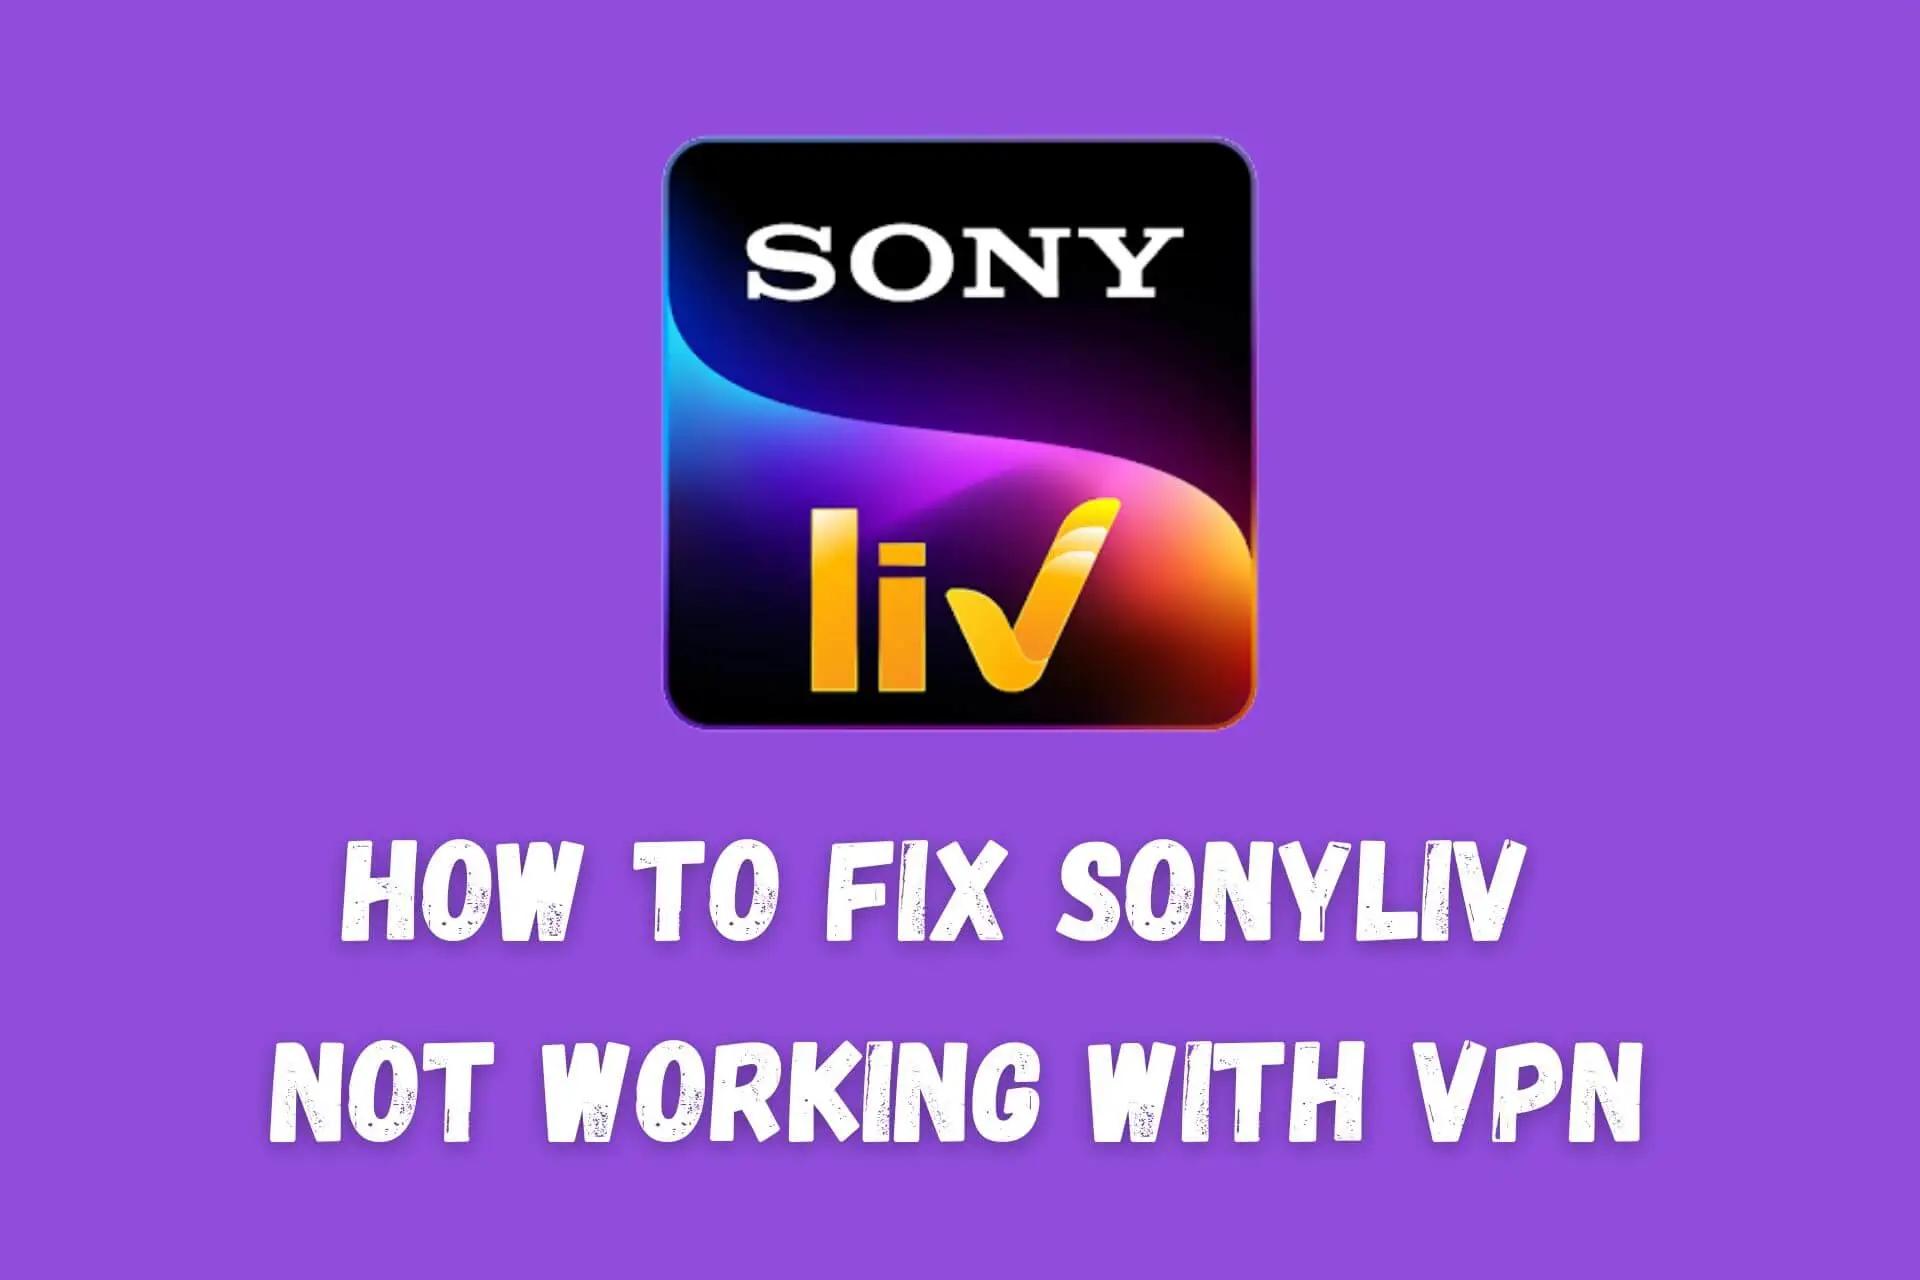 sonyliv not working with vpn